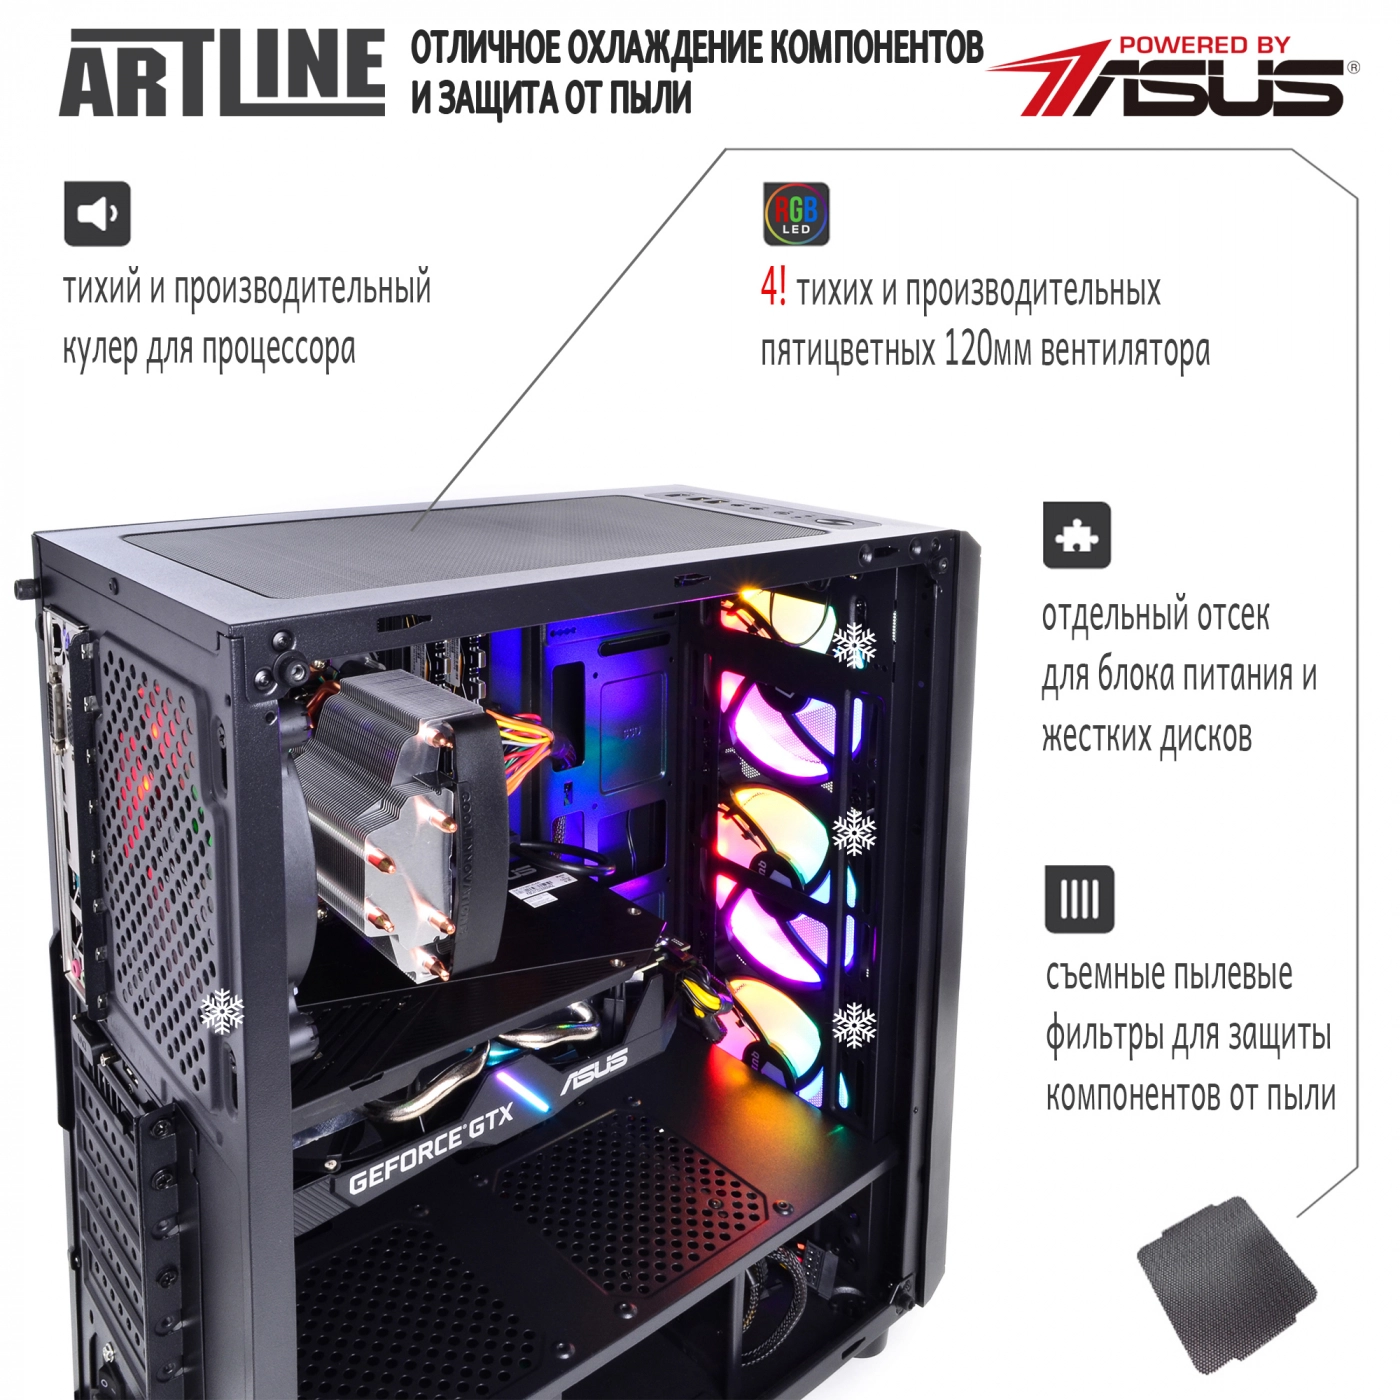 Купить Компьютер ARTLINE Gaming X36v06 - фото 3